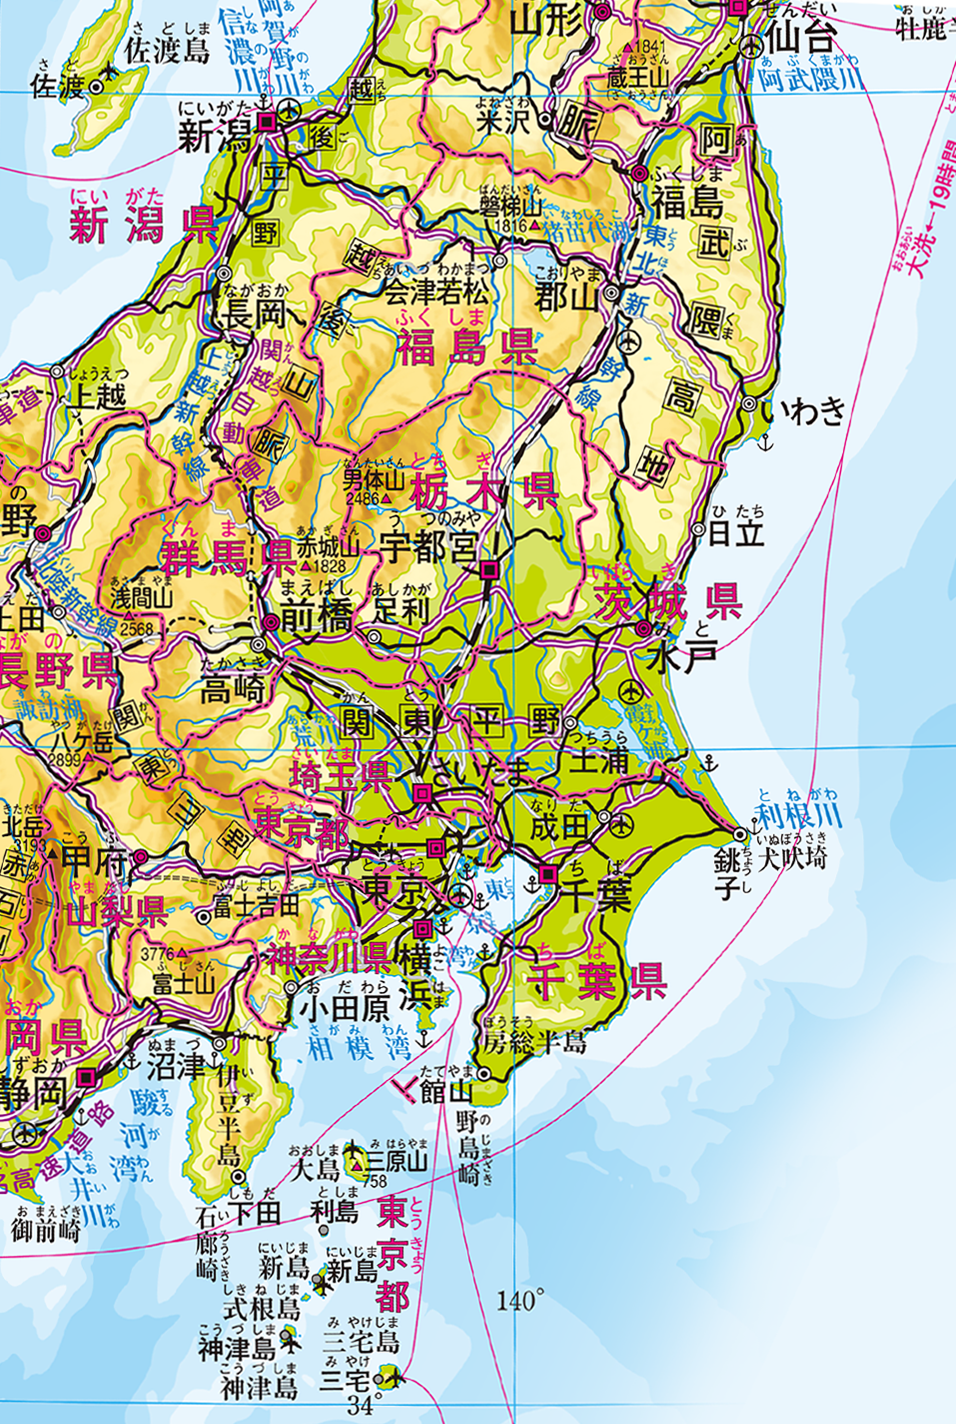 関東地方 州 地方別メニュー 中学校社会科地図 帝国書院